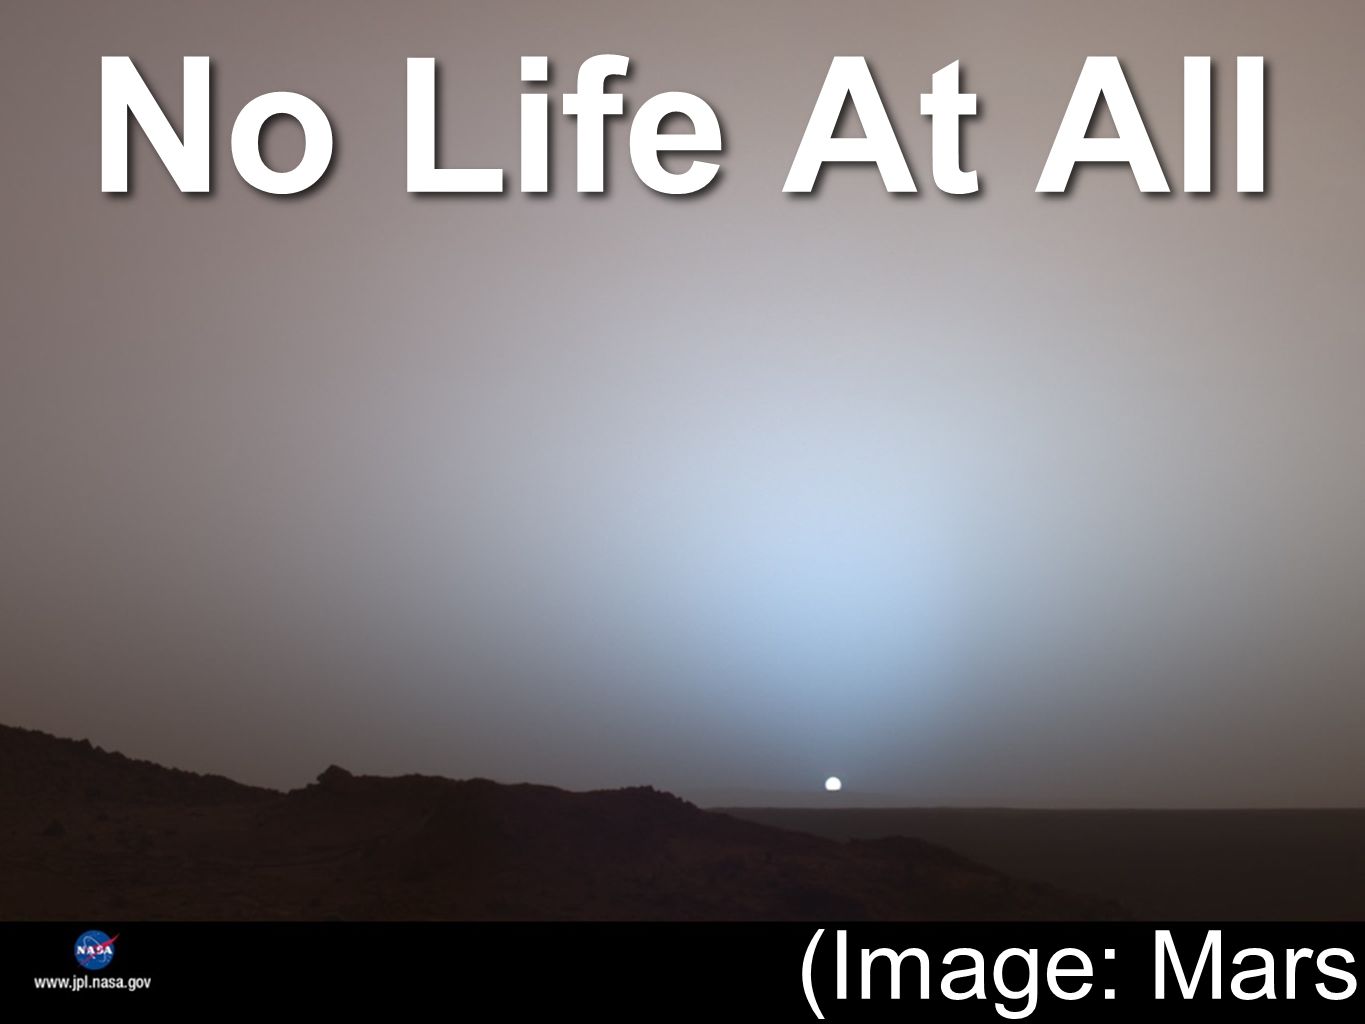 No Life At All (Image: Mars)